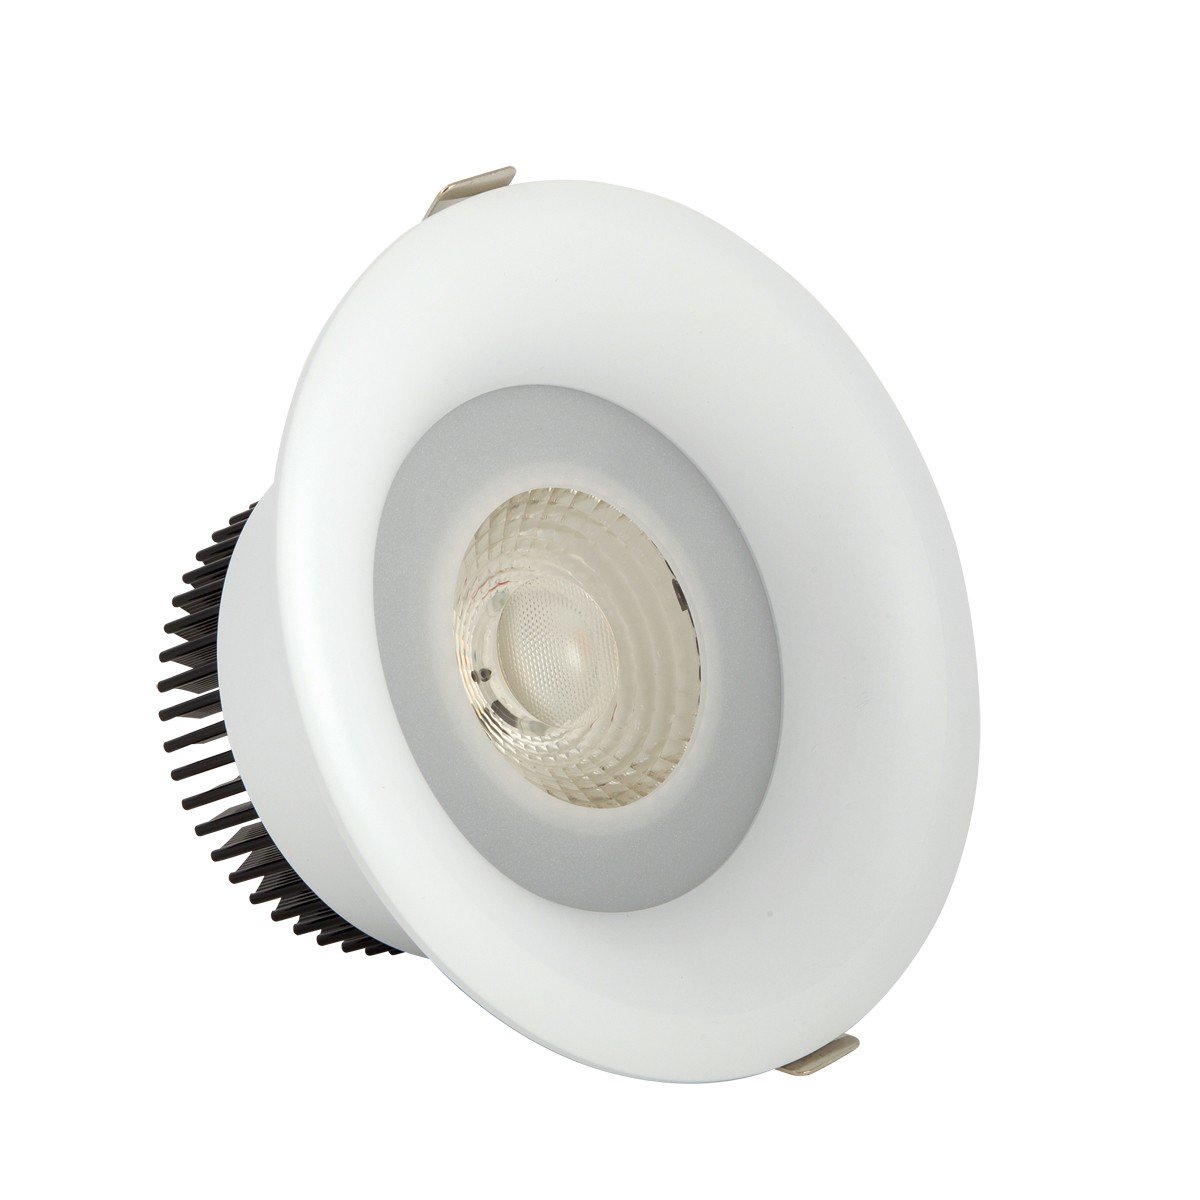 Φωτιστικό downlight στρογγυλό  λευκού χρώματος 30W 3000K 2700 lumen με ενσωματωμένο λαμπτήρα 24D VK/04150/W/W/24